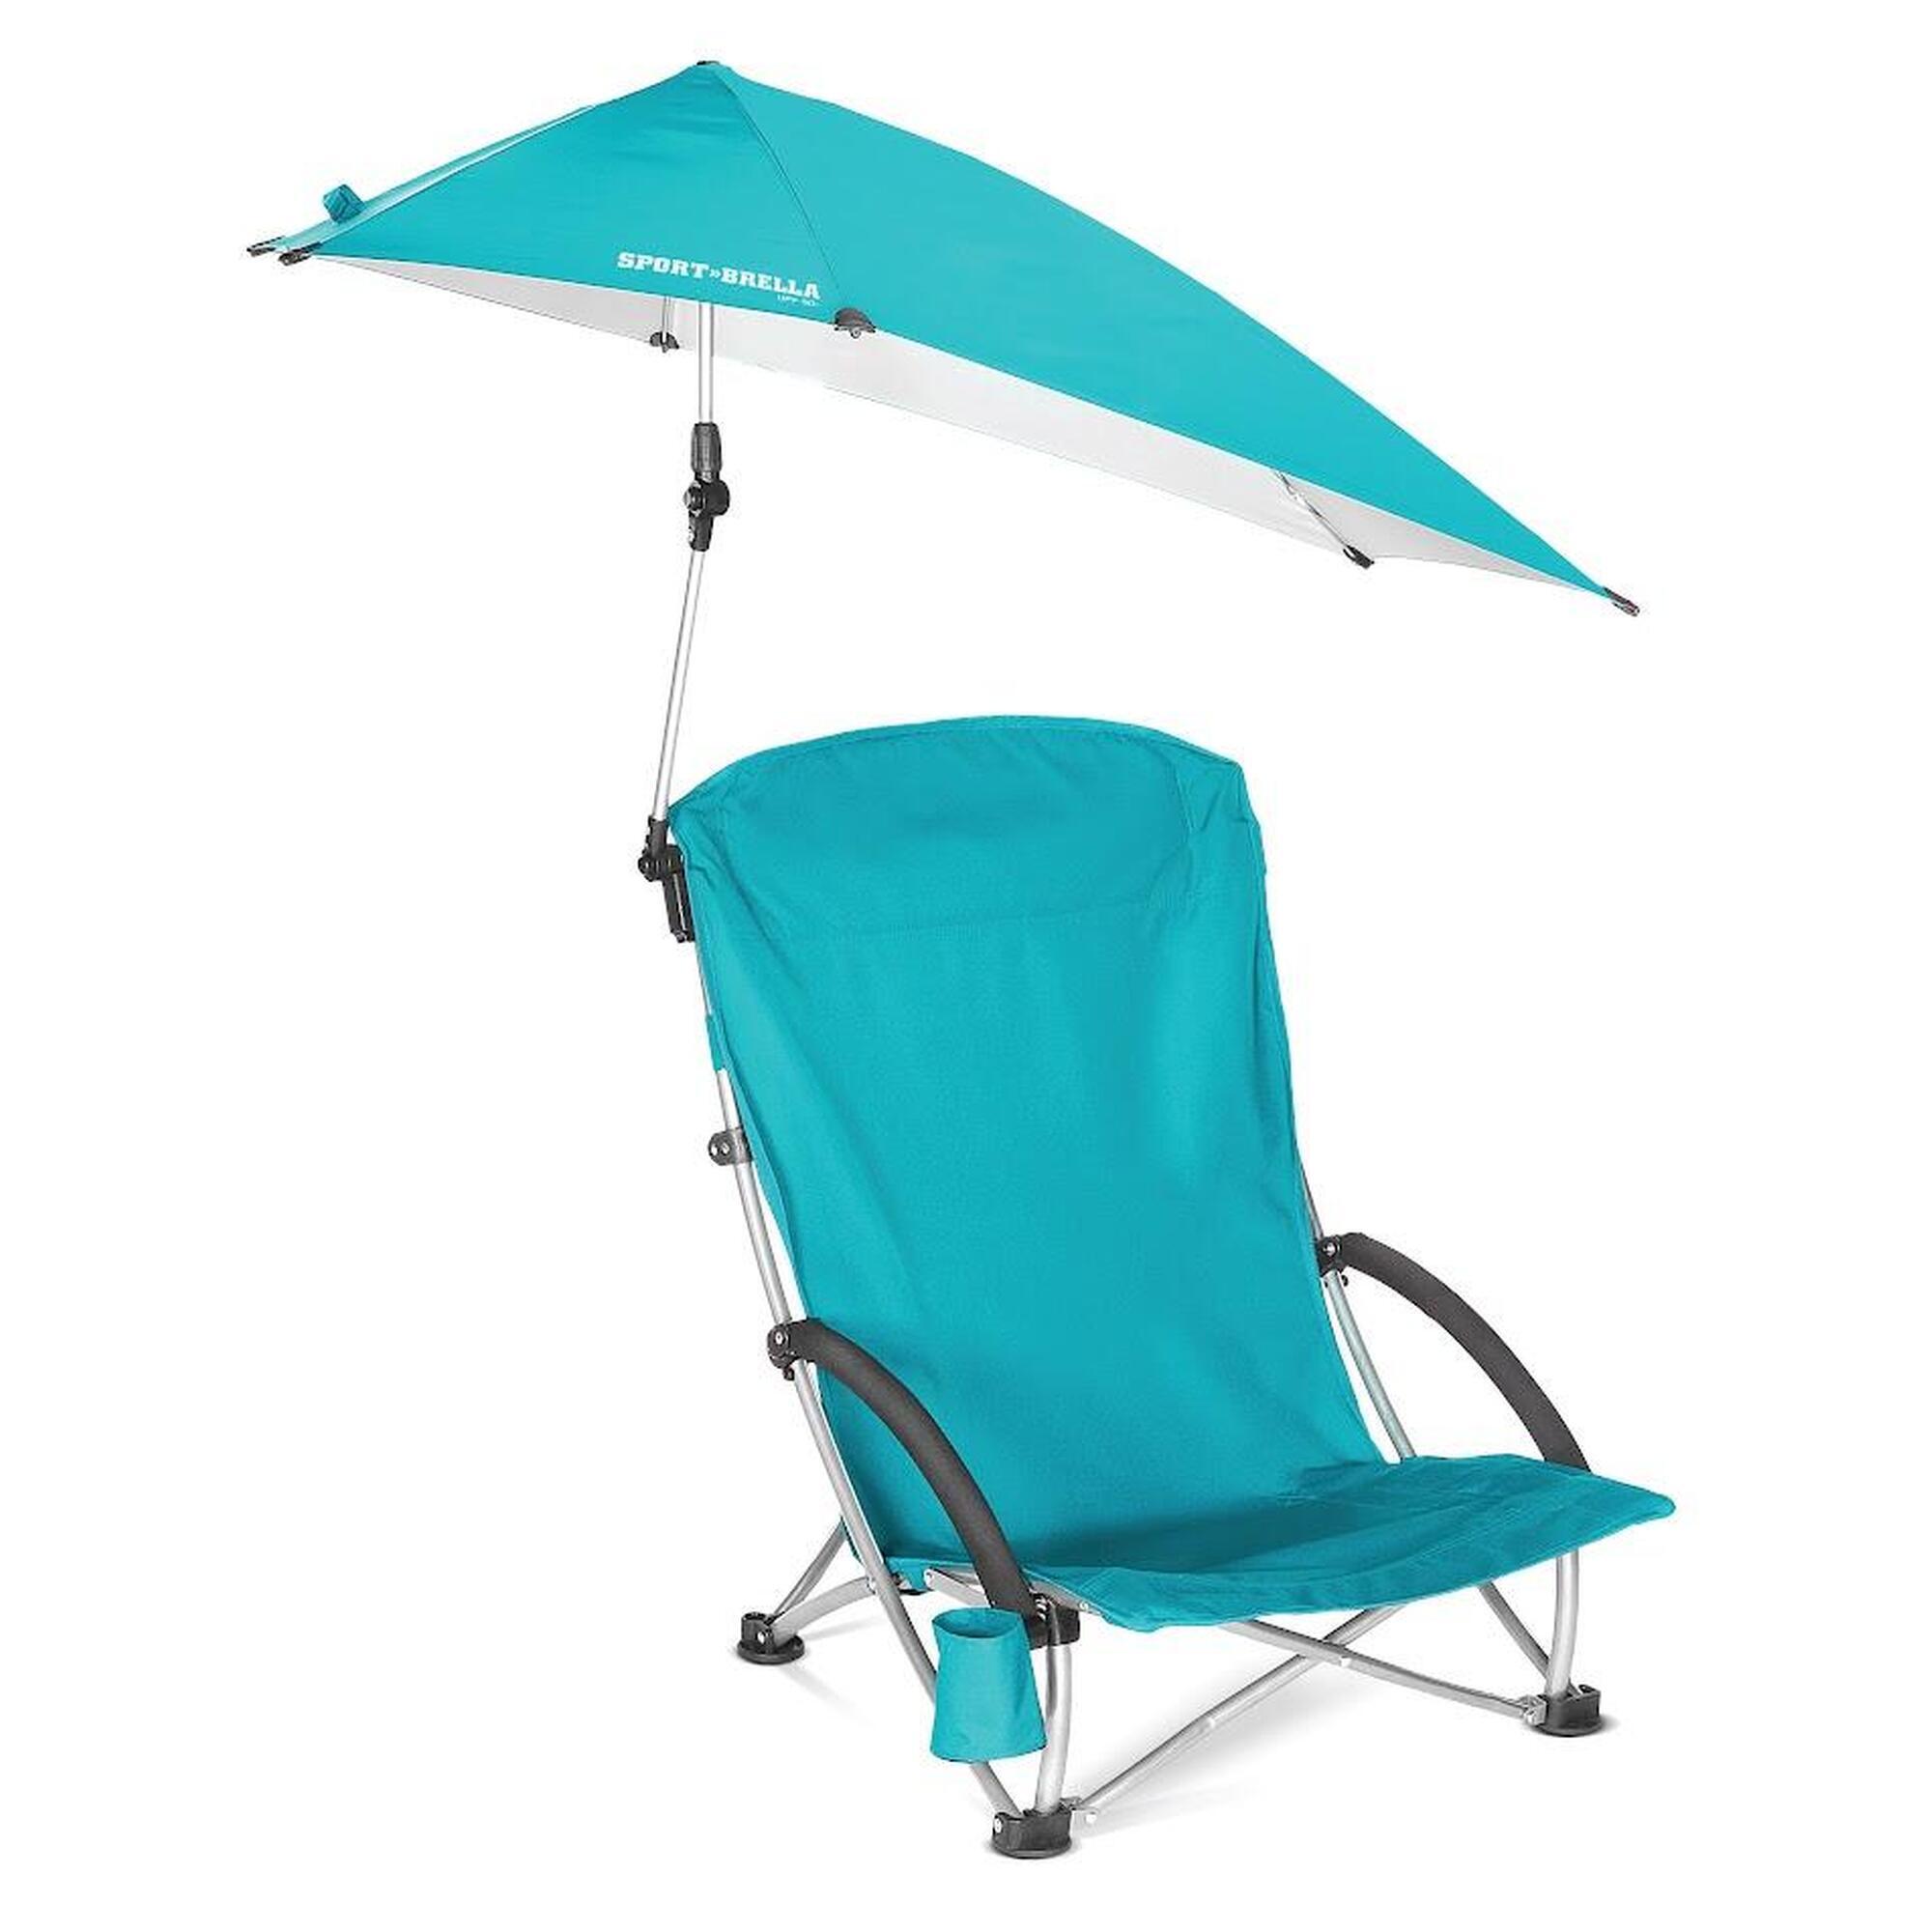 Strandstoel: Comfort met verkoelend gaas, UPF 50+ bescherming tegen de zon